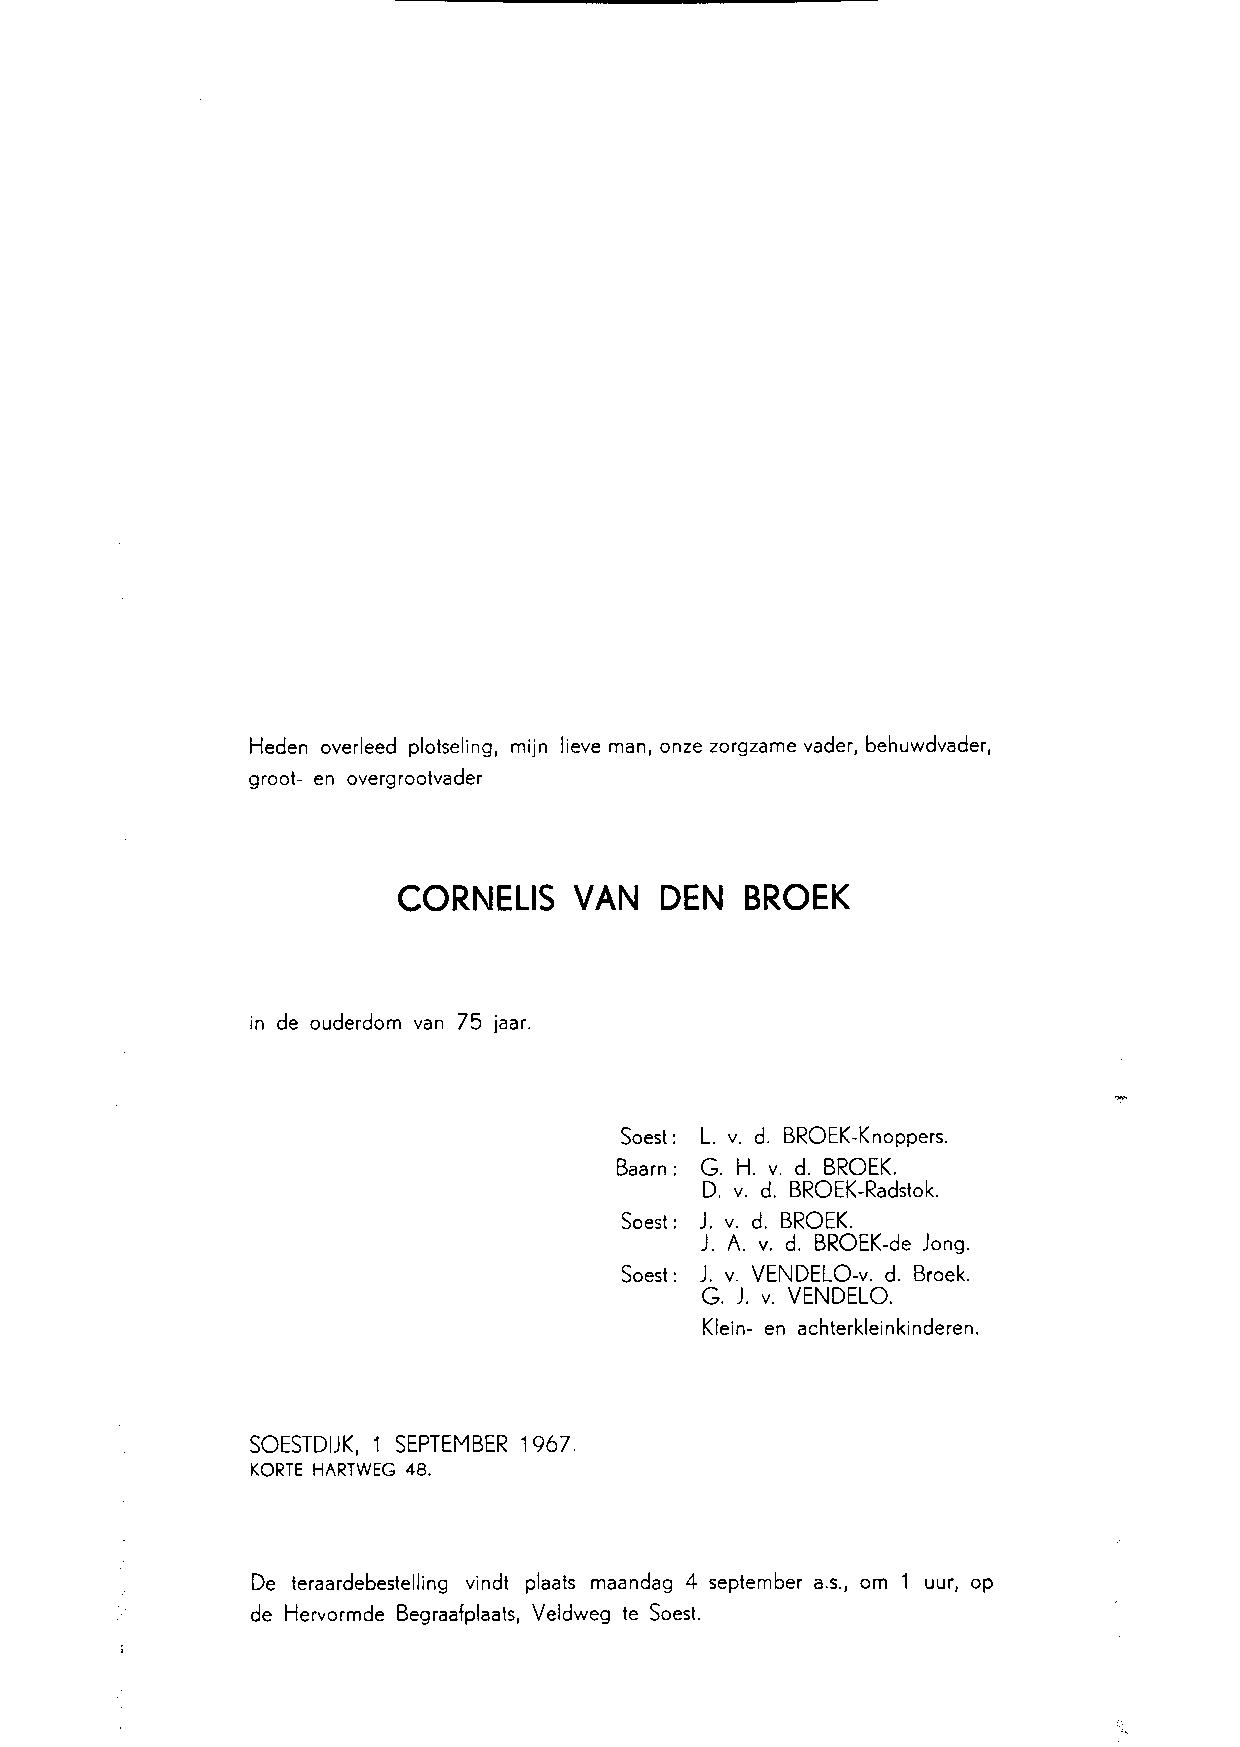 cornelis_van_den_broek_1892.jpg